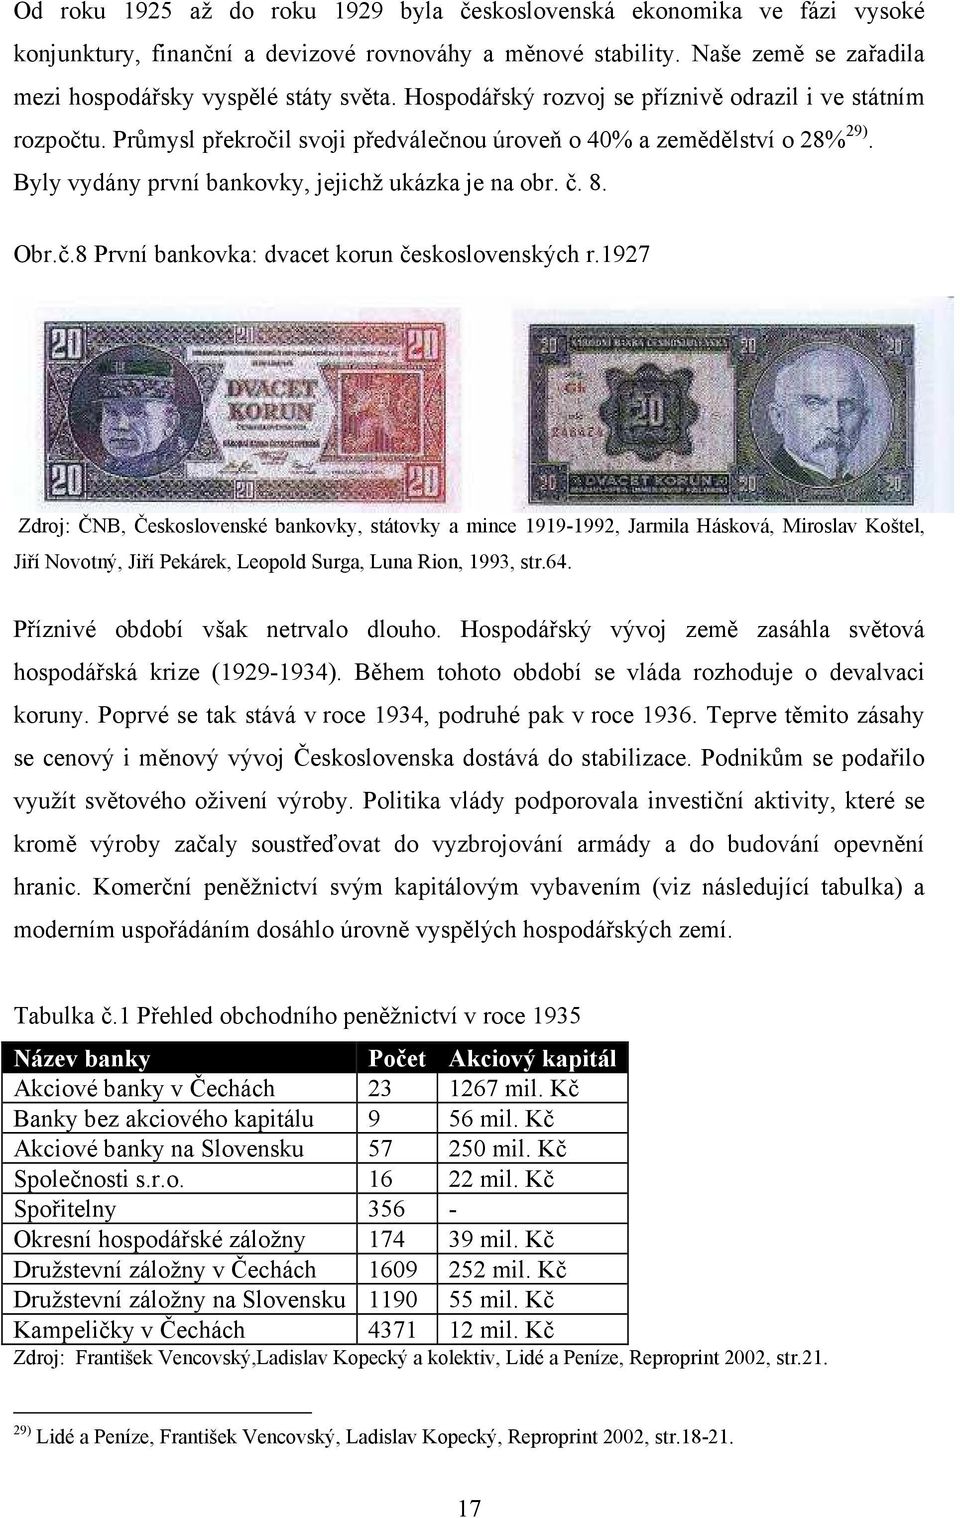 Obr.č.8 První bankovka: dvacet korun československých r.